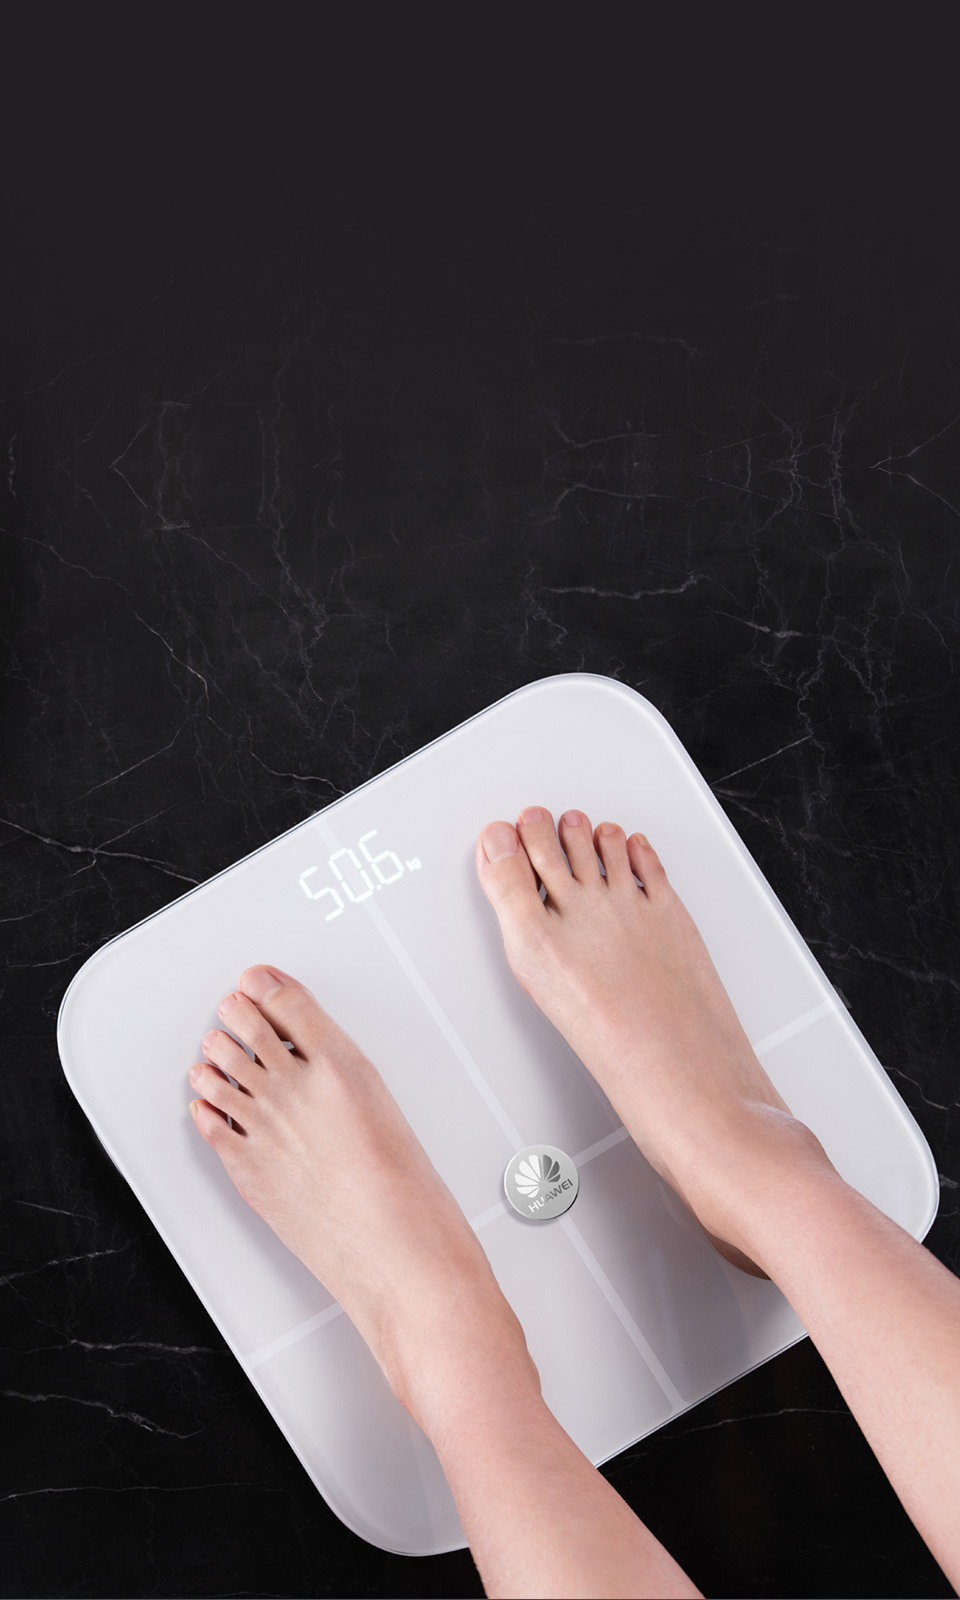 Offlineanzeige von Körpergewicht und -fettanteil